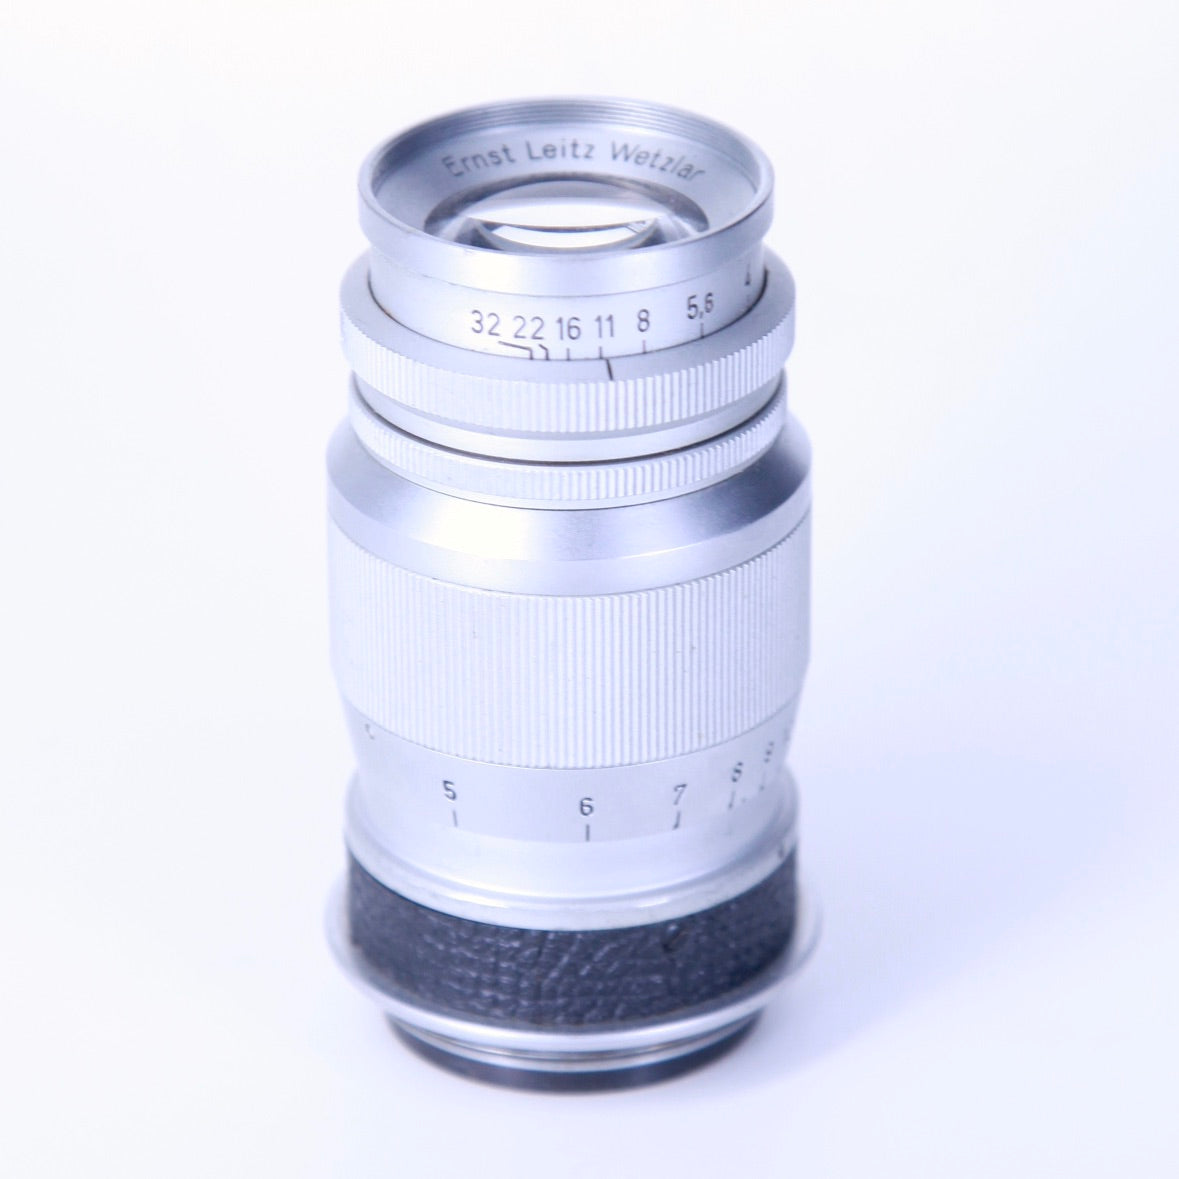 Leica Elmar 9cm f4 M39